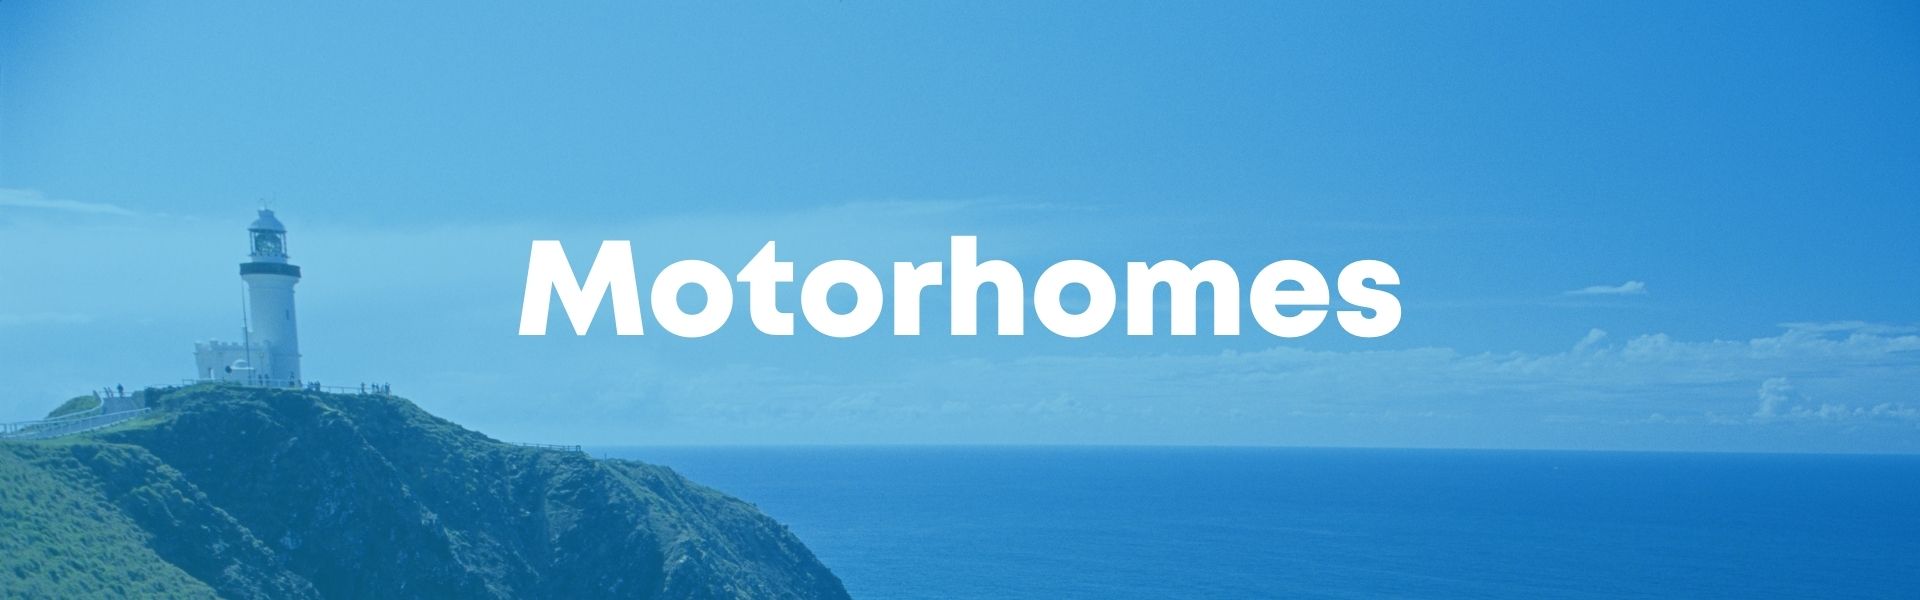 Our range of motorhomes, Sydney RV Motorhomes, winnebago, windsor, jayco, sunliner, avan